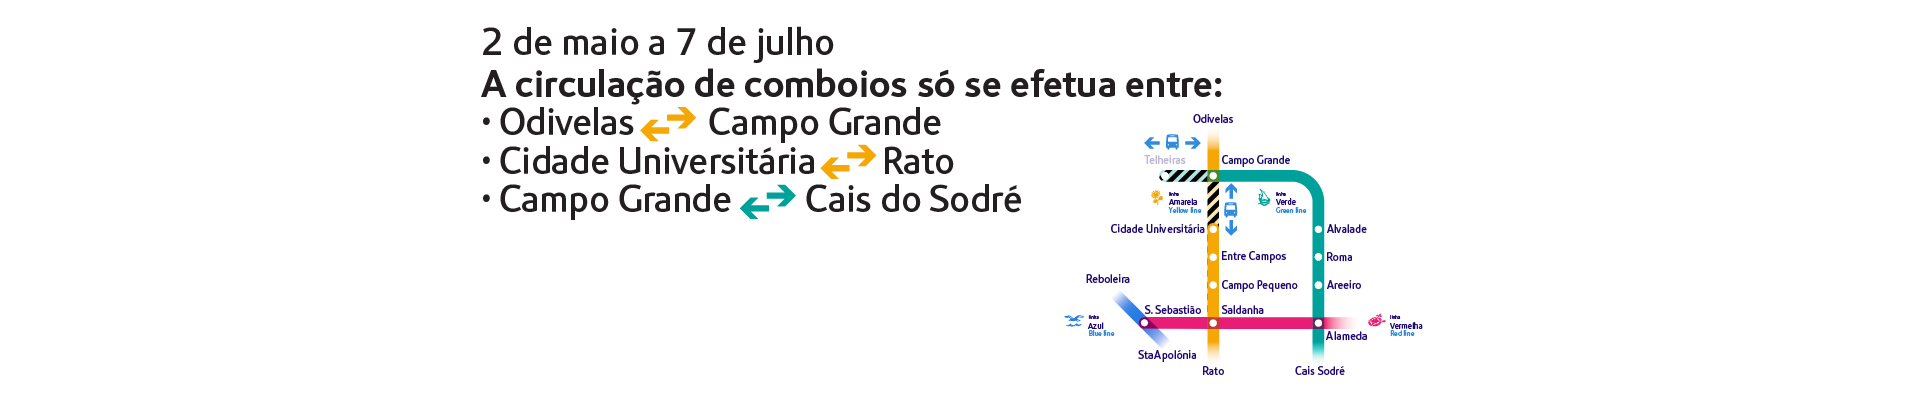  2 de maio a 7 de julho. A circulação de comboios só se efetua entre: Odivelas/Campo Grande, Cidade Universitária/ Rato e Campo Grande/Cais do Sodré